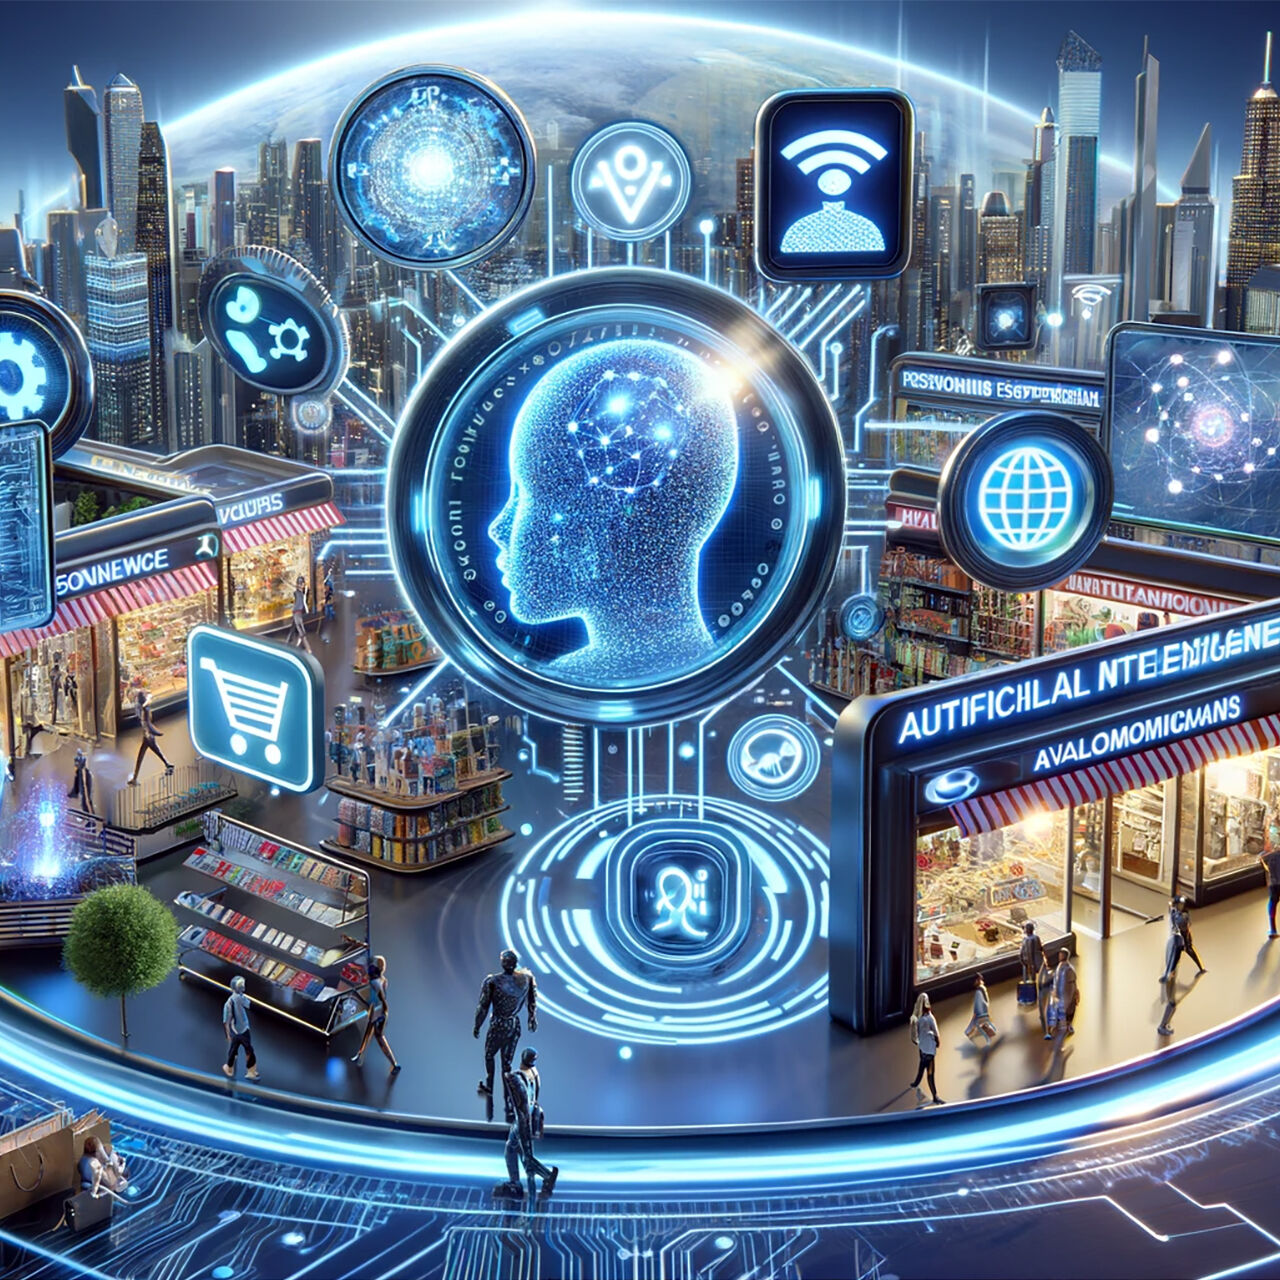 Αγορές: Η τεχνητή νοημοσύνη φέρνει επανάσταση στην αγοραστική συμπεριφορά με προγνωστική εξατομίκευση